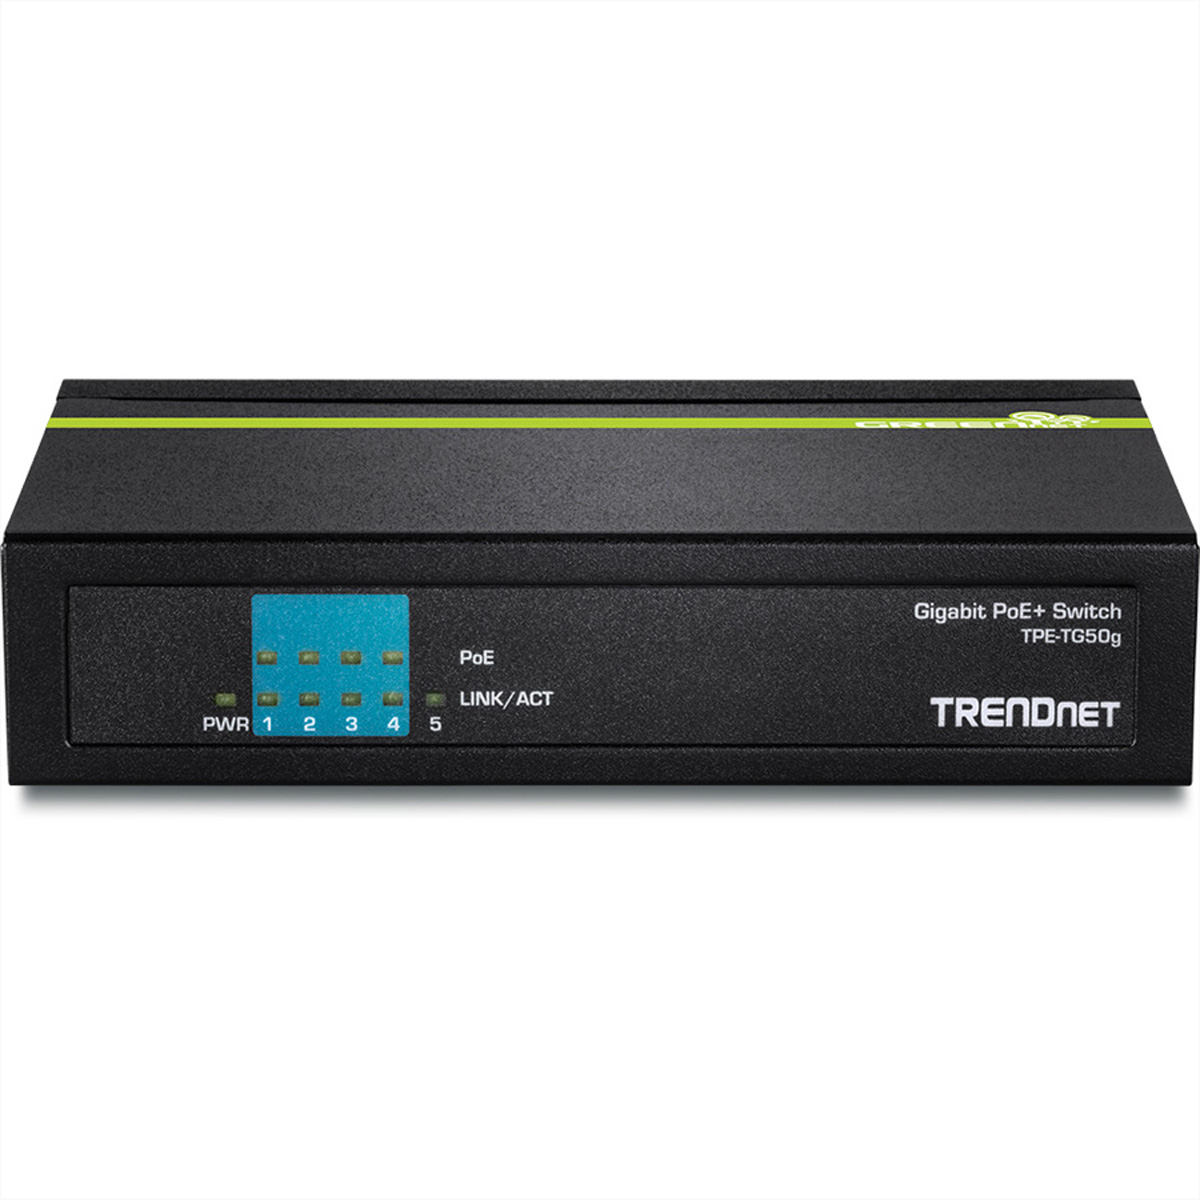 Switch Ethernet Switch PoE+ 5-Port TPE-TG50g Gigabit TRENDNET Gigabit